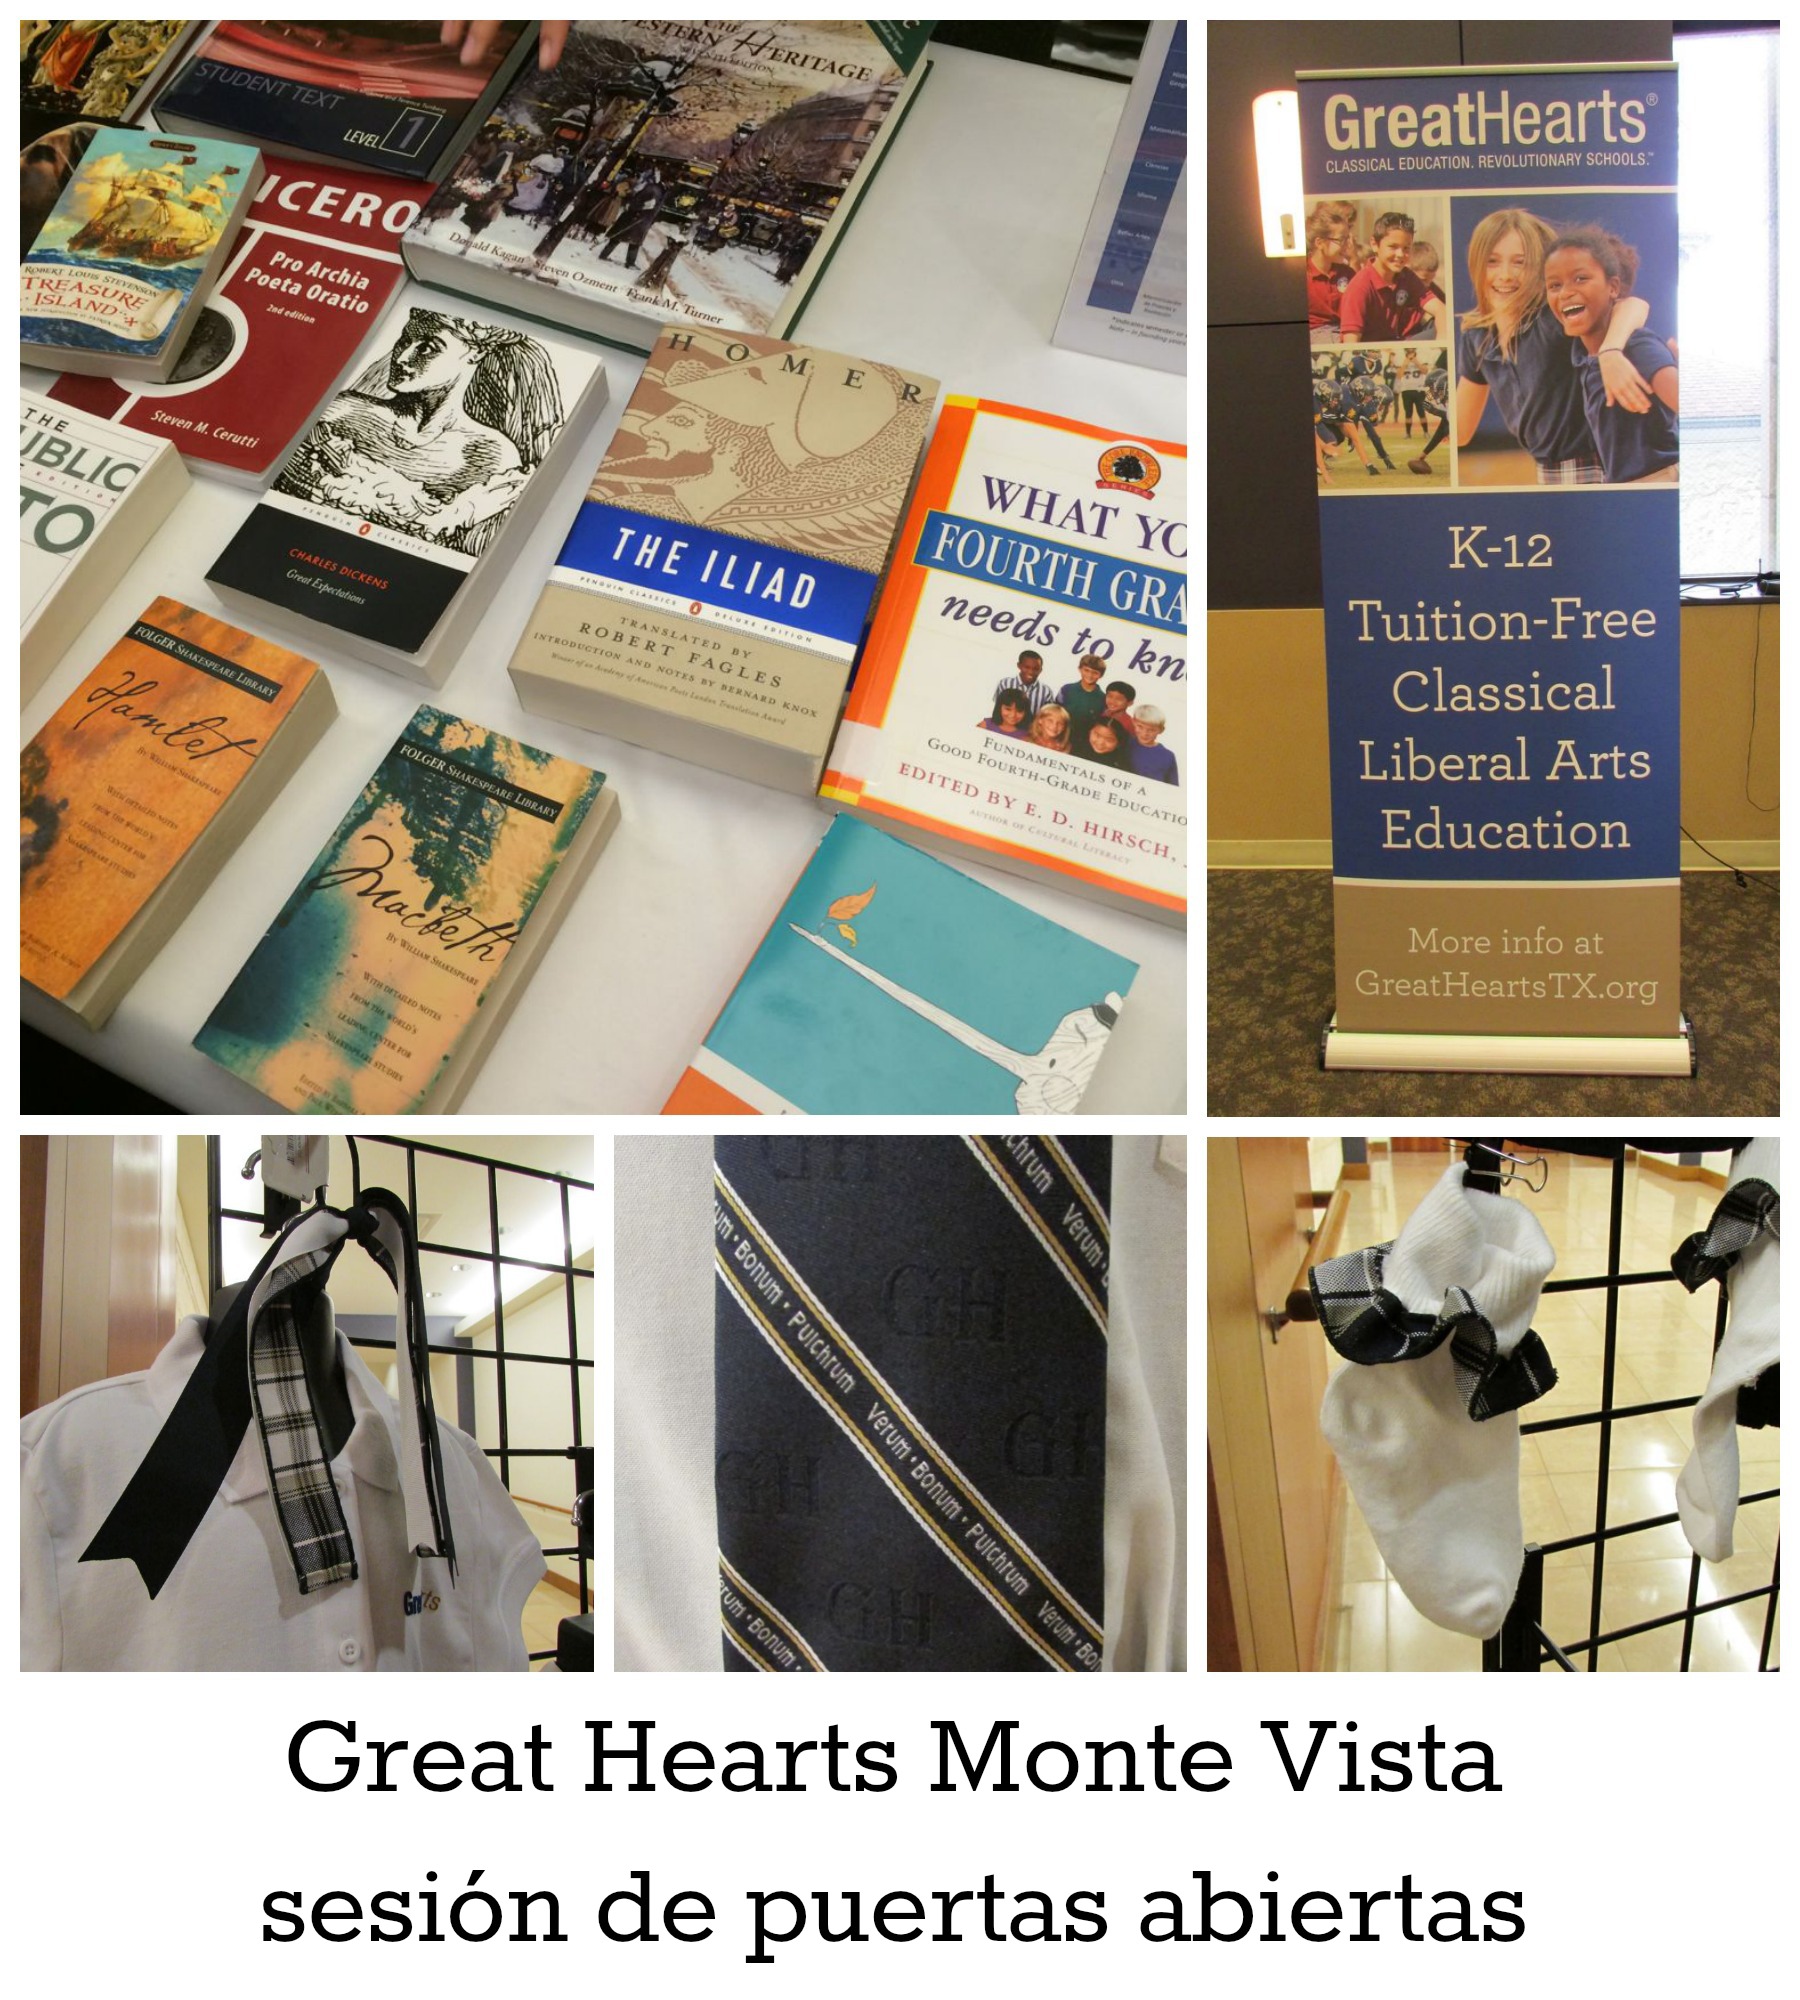 Great Hearts Monte Vista sesion de puertas abiertas | San Antonio Charter Moms